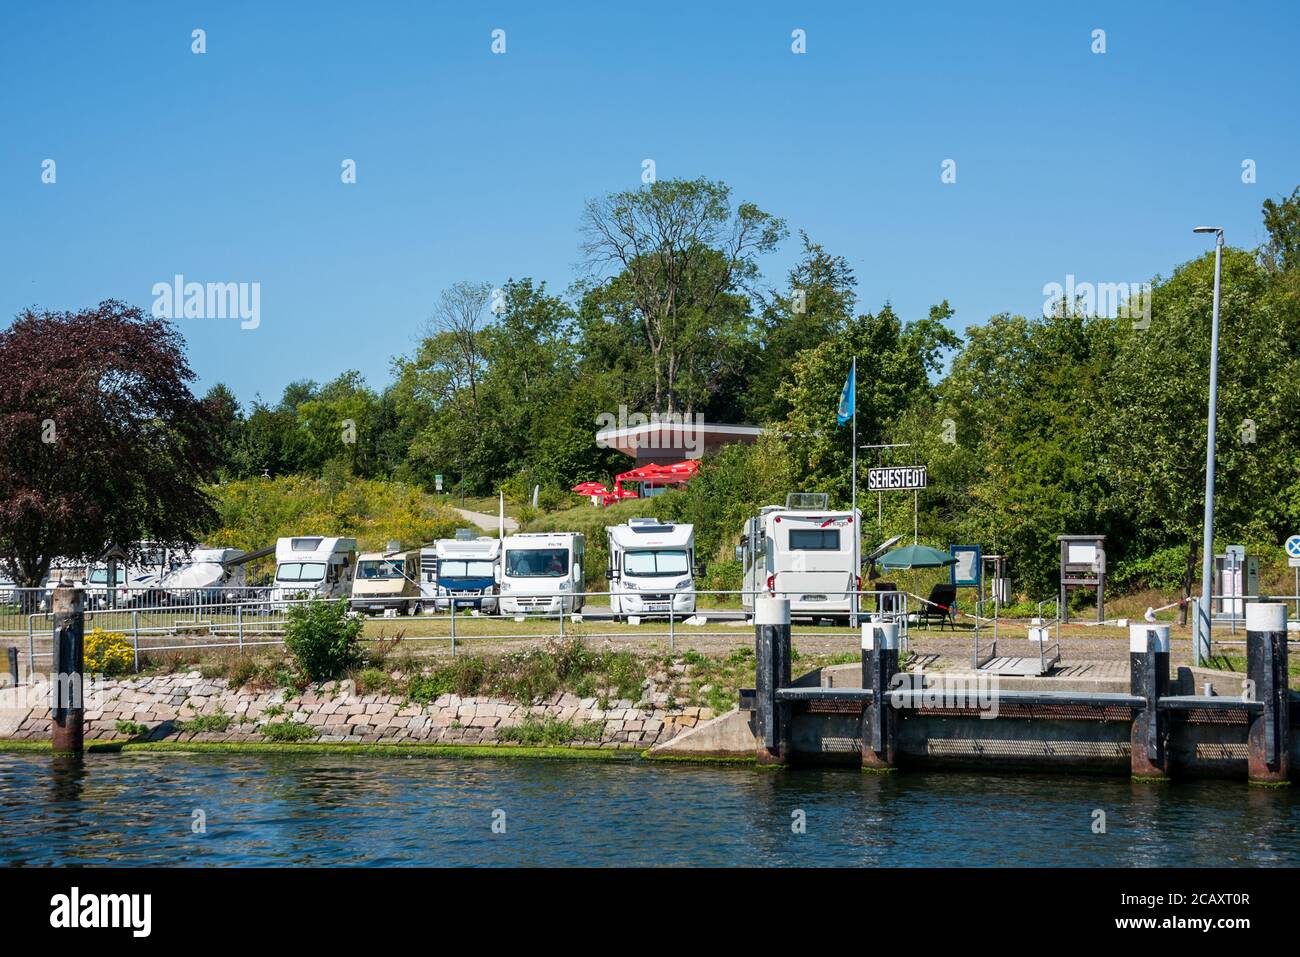 Die Kanalfähre 'Pillau' transportatiert Fahrzeuge und Personen von einem Ufer Des Kiel-Canals und das kostenlos 24 Stunden am Tag durchgehend Foto de stock